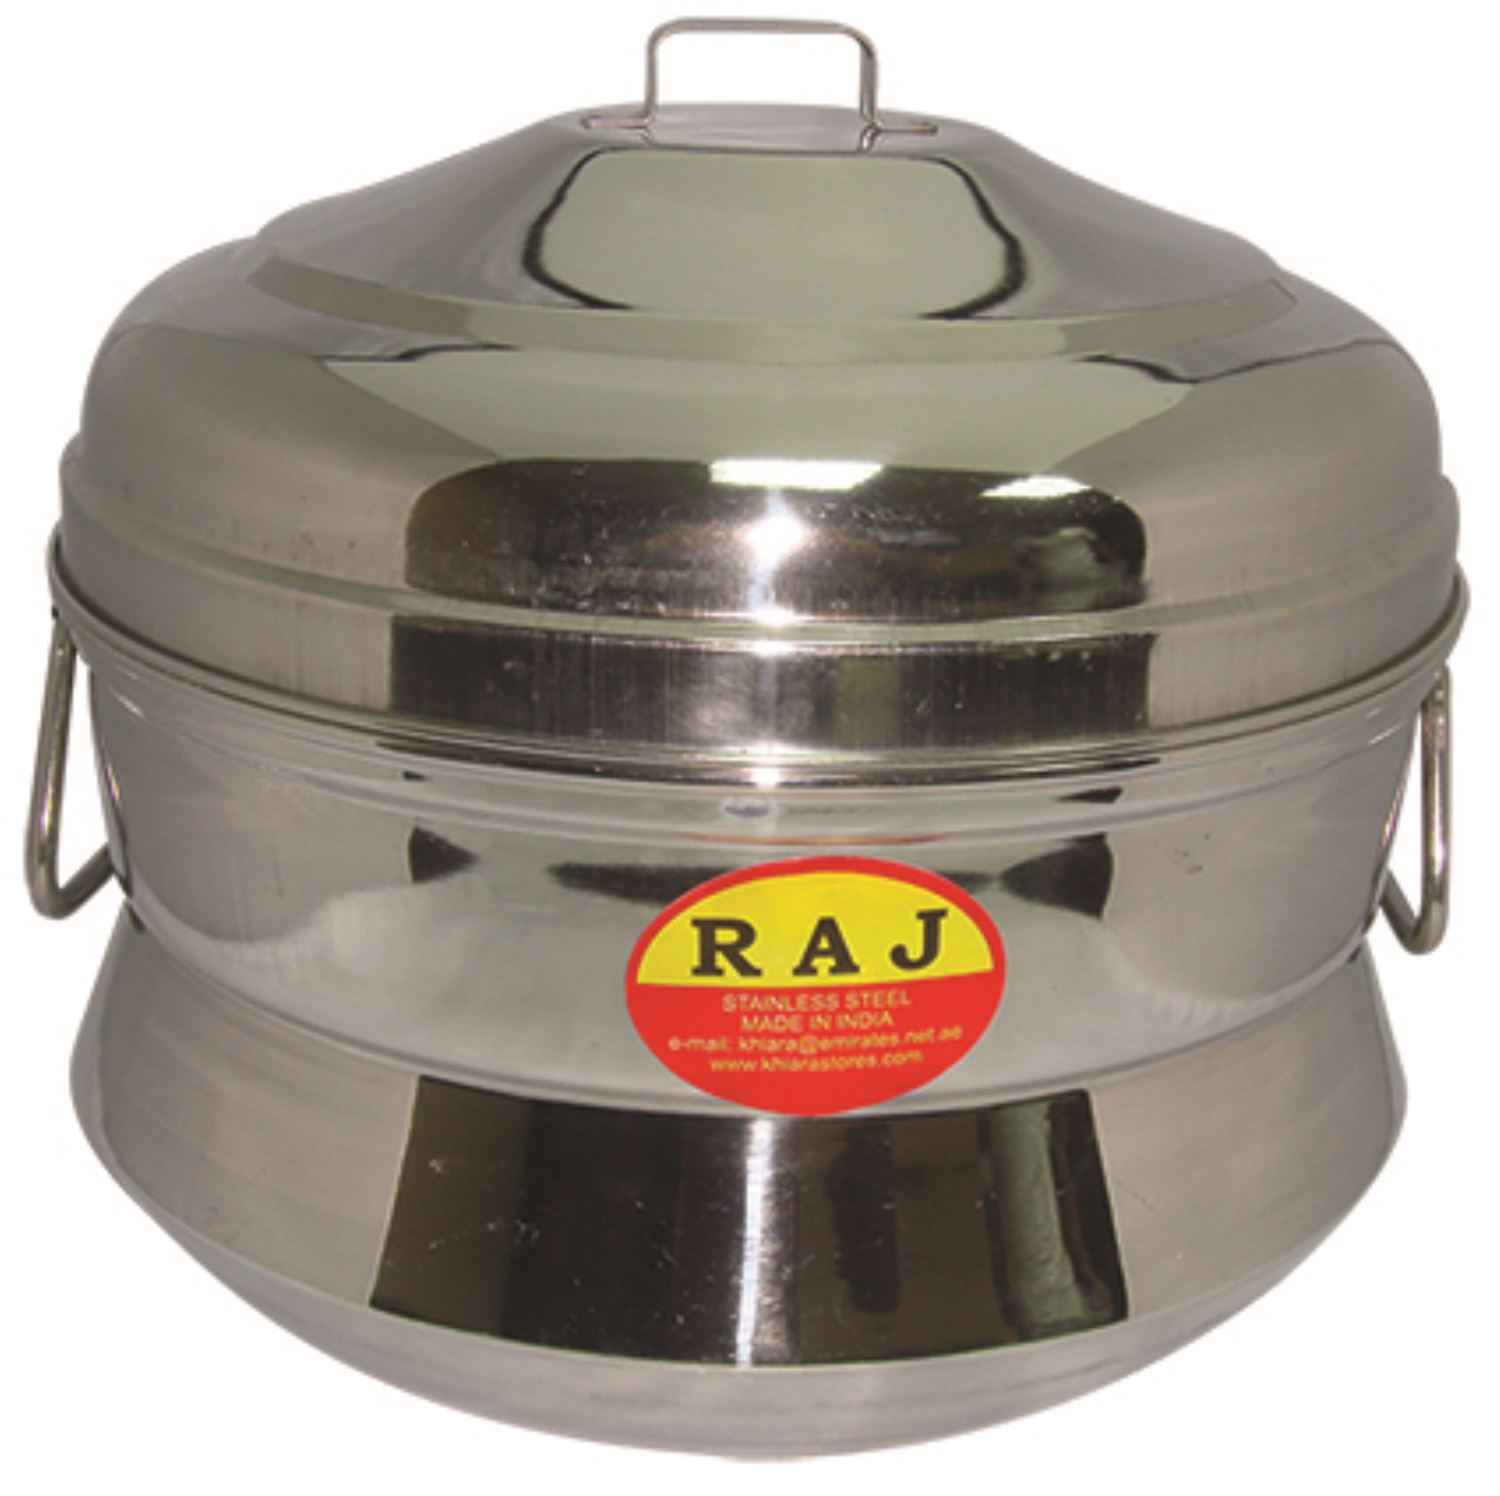 Raj Iddly Pot Small